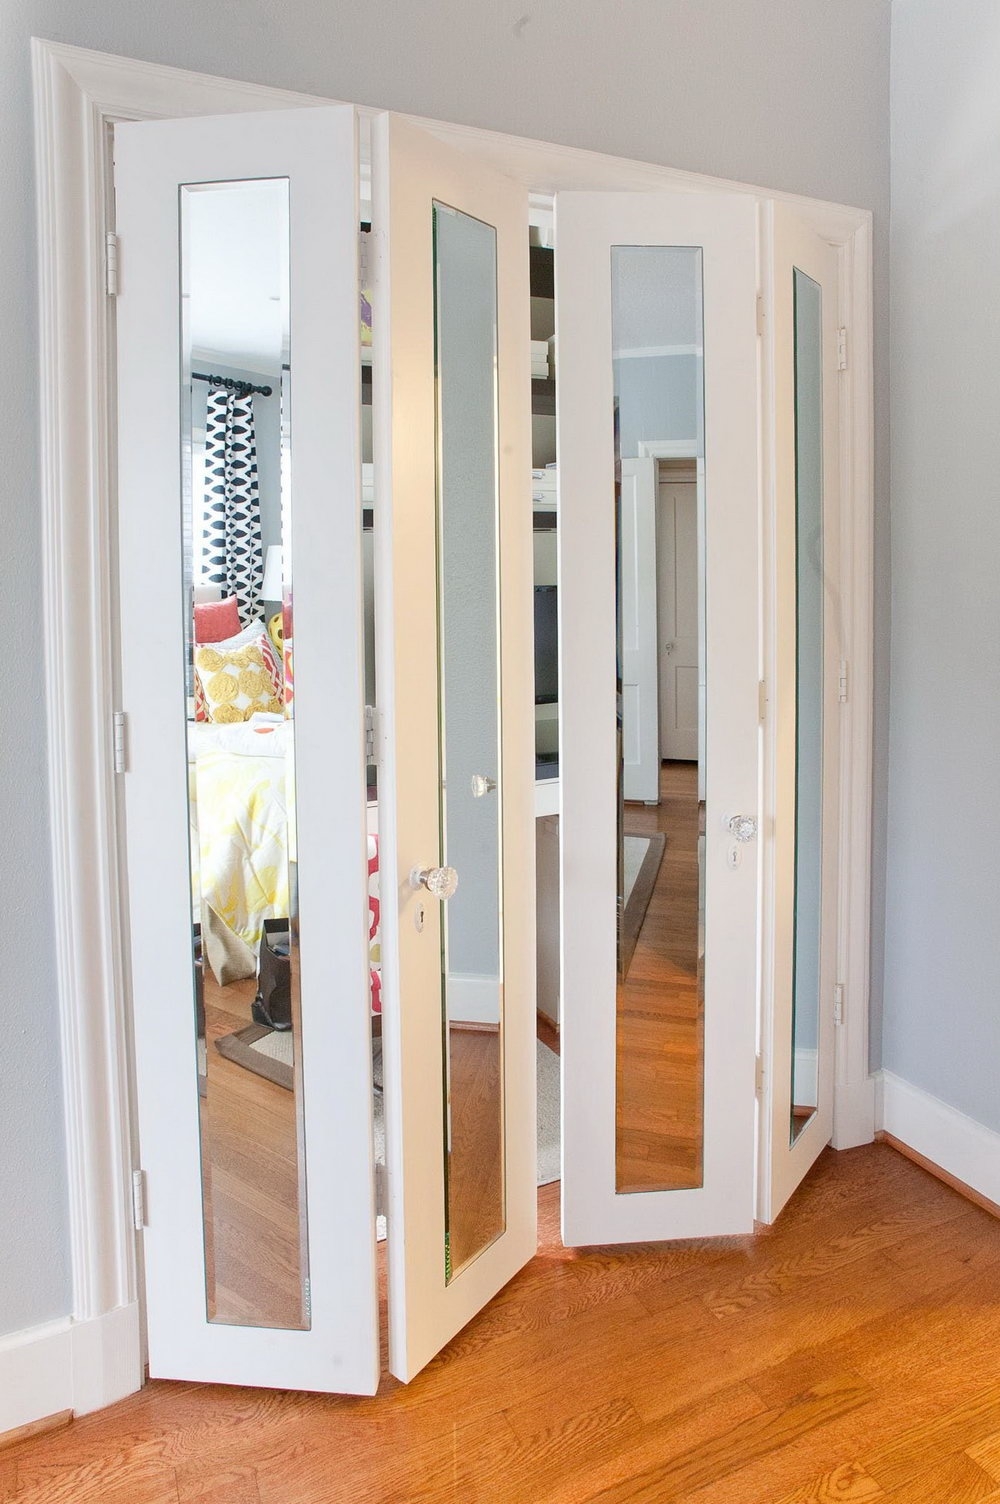 Sliding Mirror Closet Doors Home Hardwaremirror bifold closet doors furnitures mirror sliding closet doors